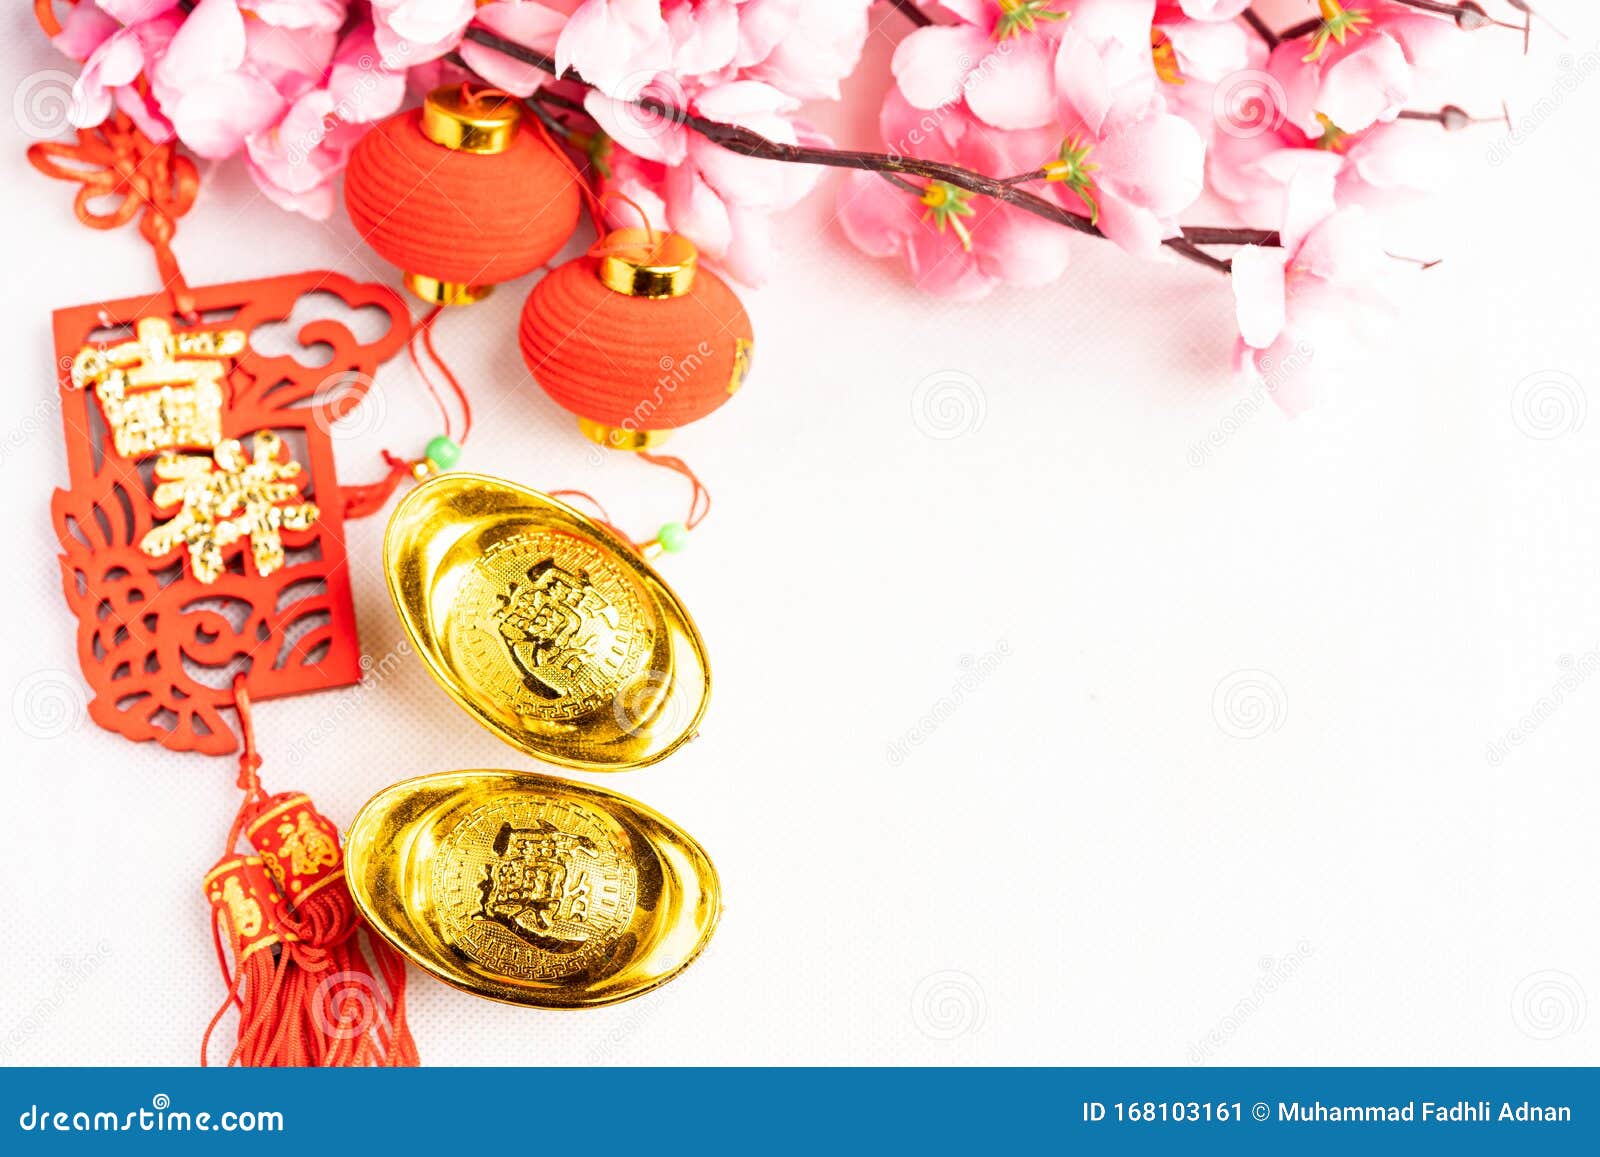 Nền trắng thanh lịch được kết hợp cùng nền Trung Quốc đậm chất phong cách châu Á để mang lại khí chất trầm lắng cho năm mới.